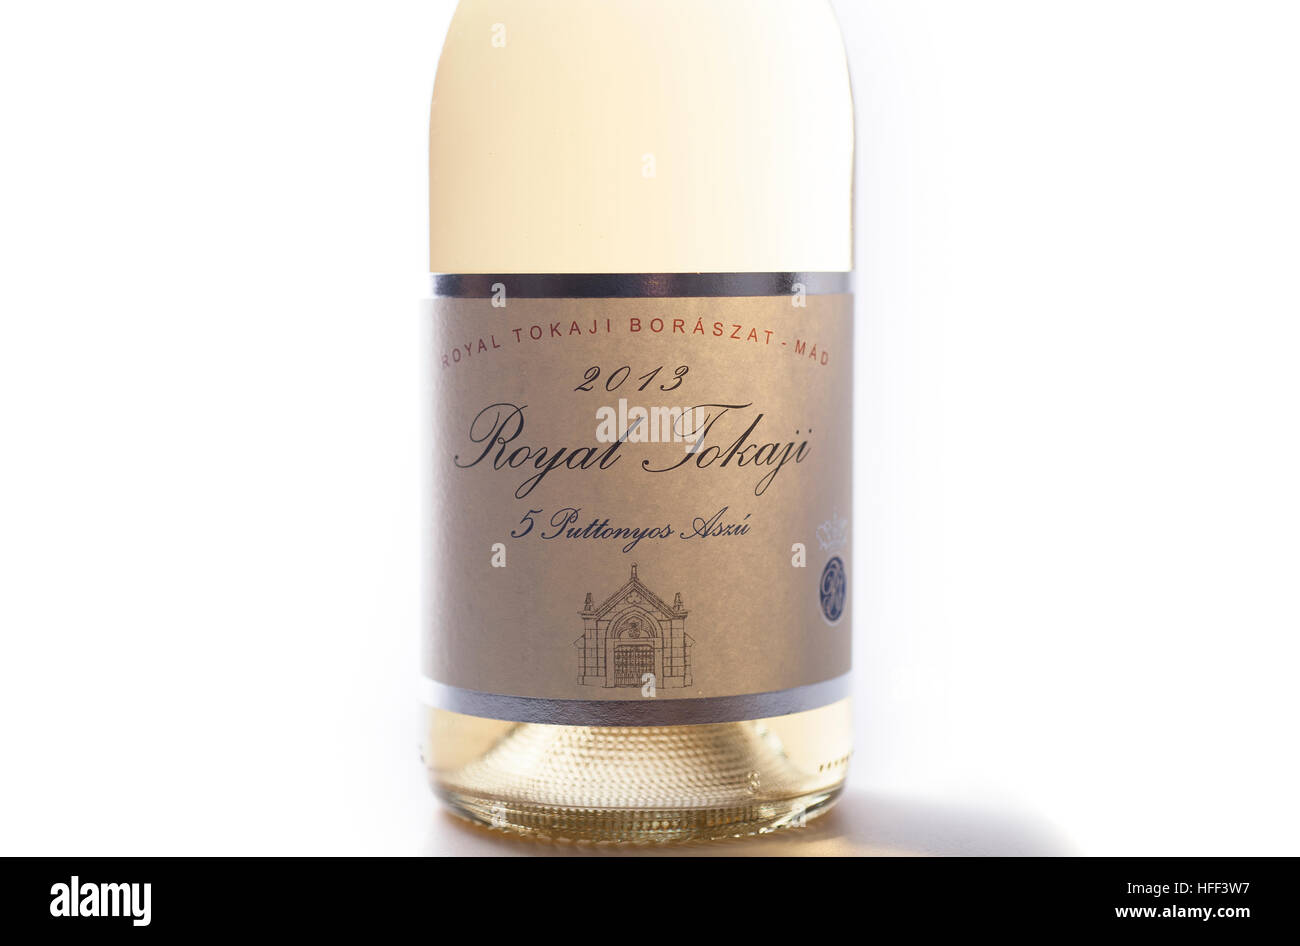 Aszu 5 puttonyos 2013 Tokai étiquette bouteille de vin de la région viticole de Tokaj, Hongrie Banque D'Images